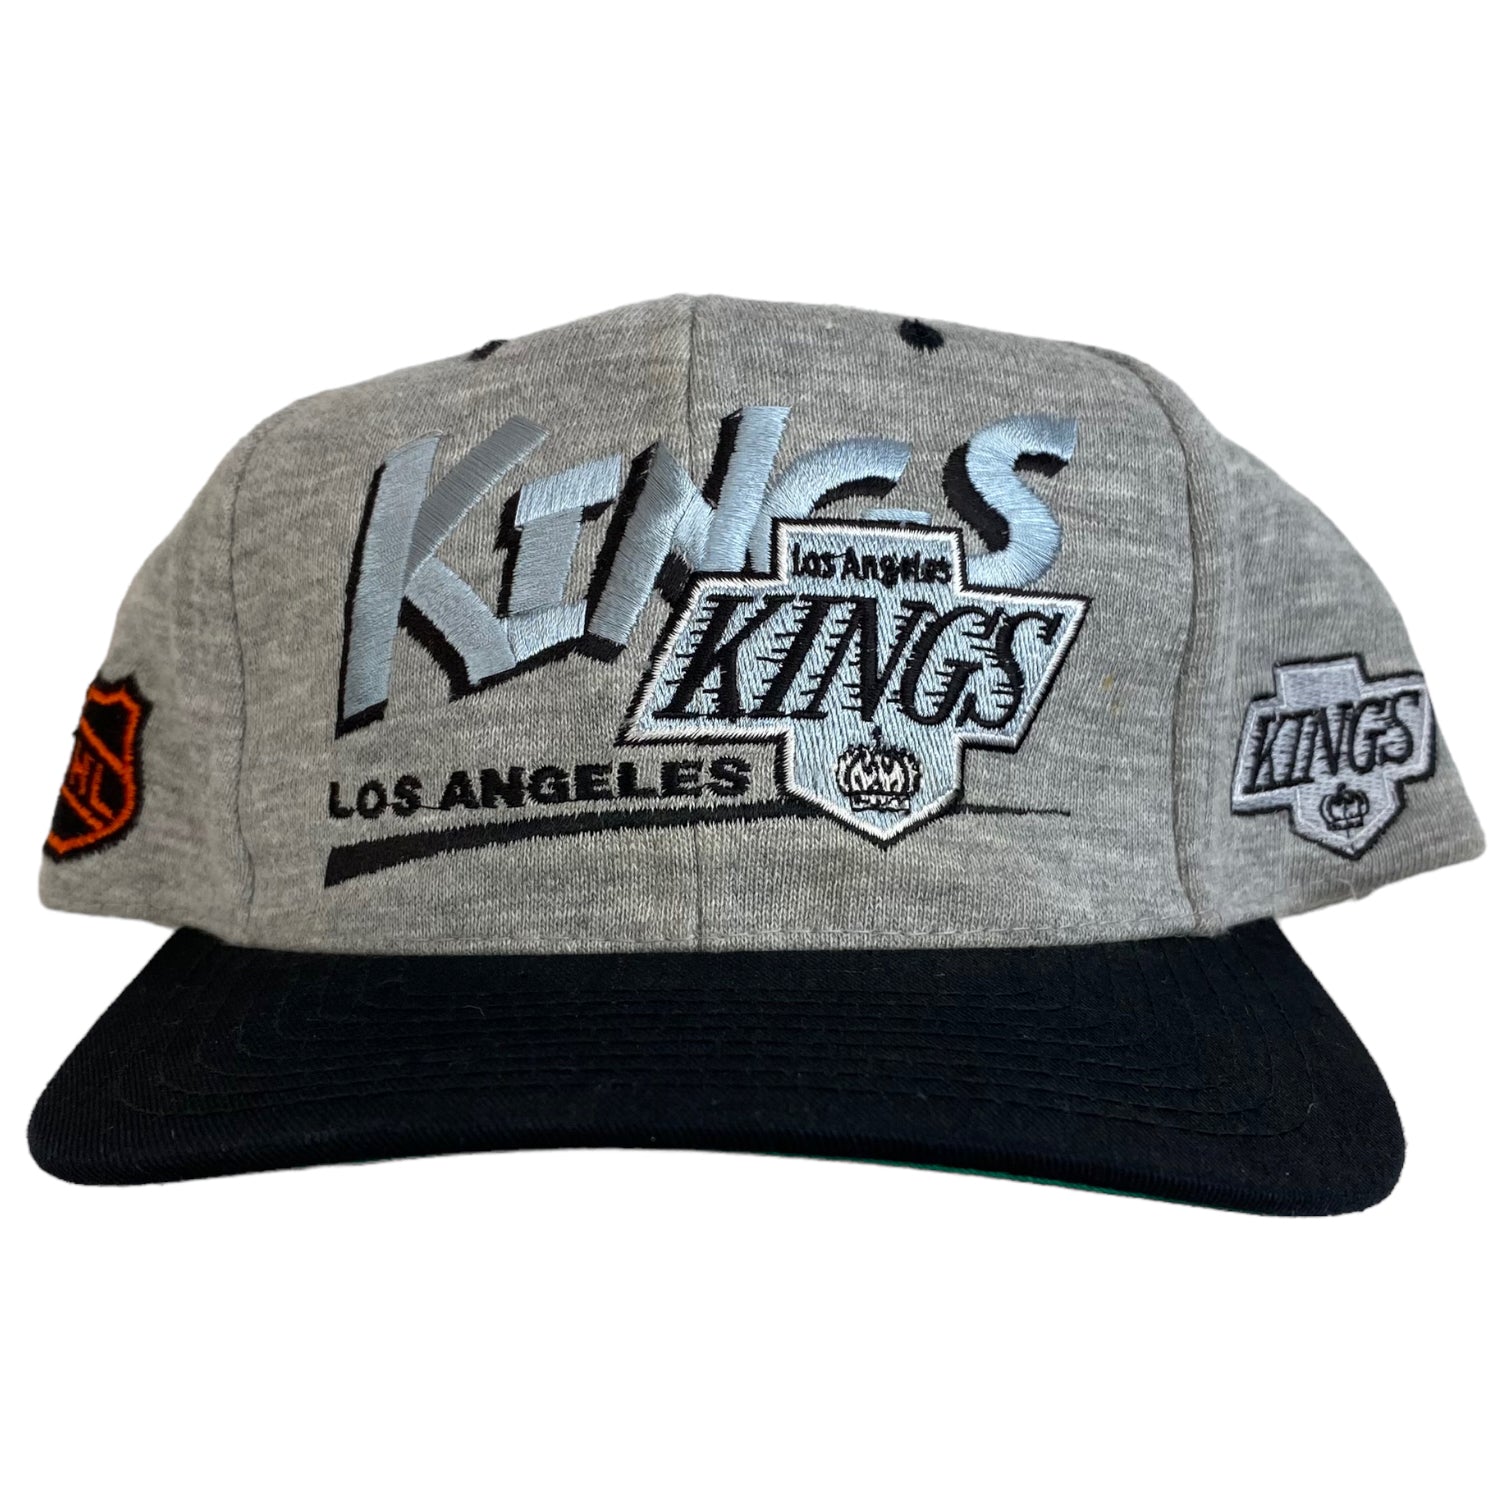 Vintage Los Angeles Kings Snapback Grey/Black